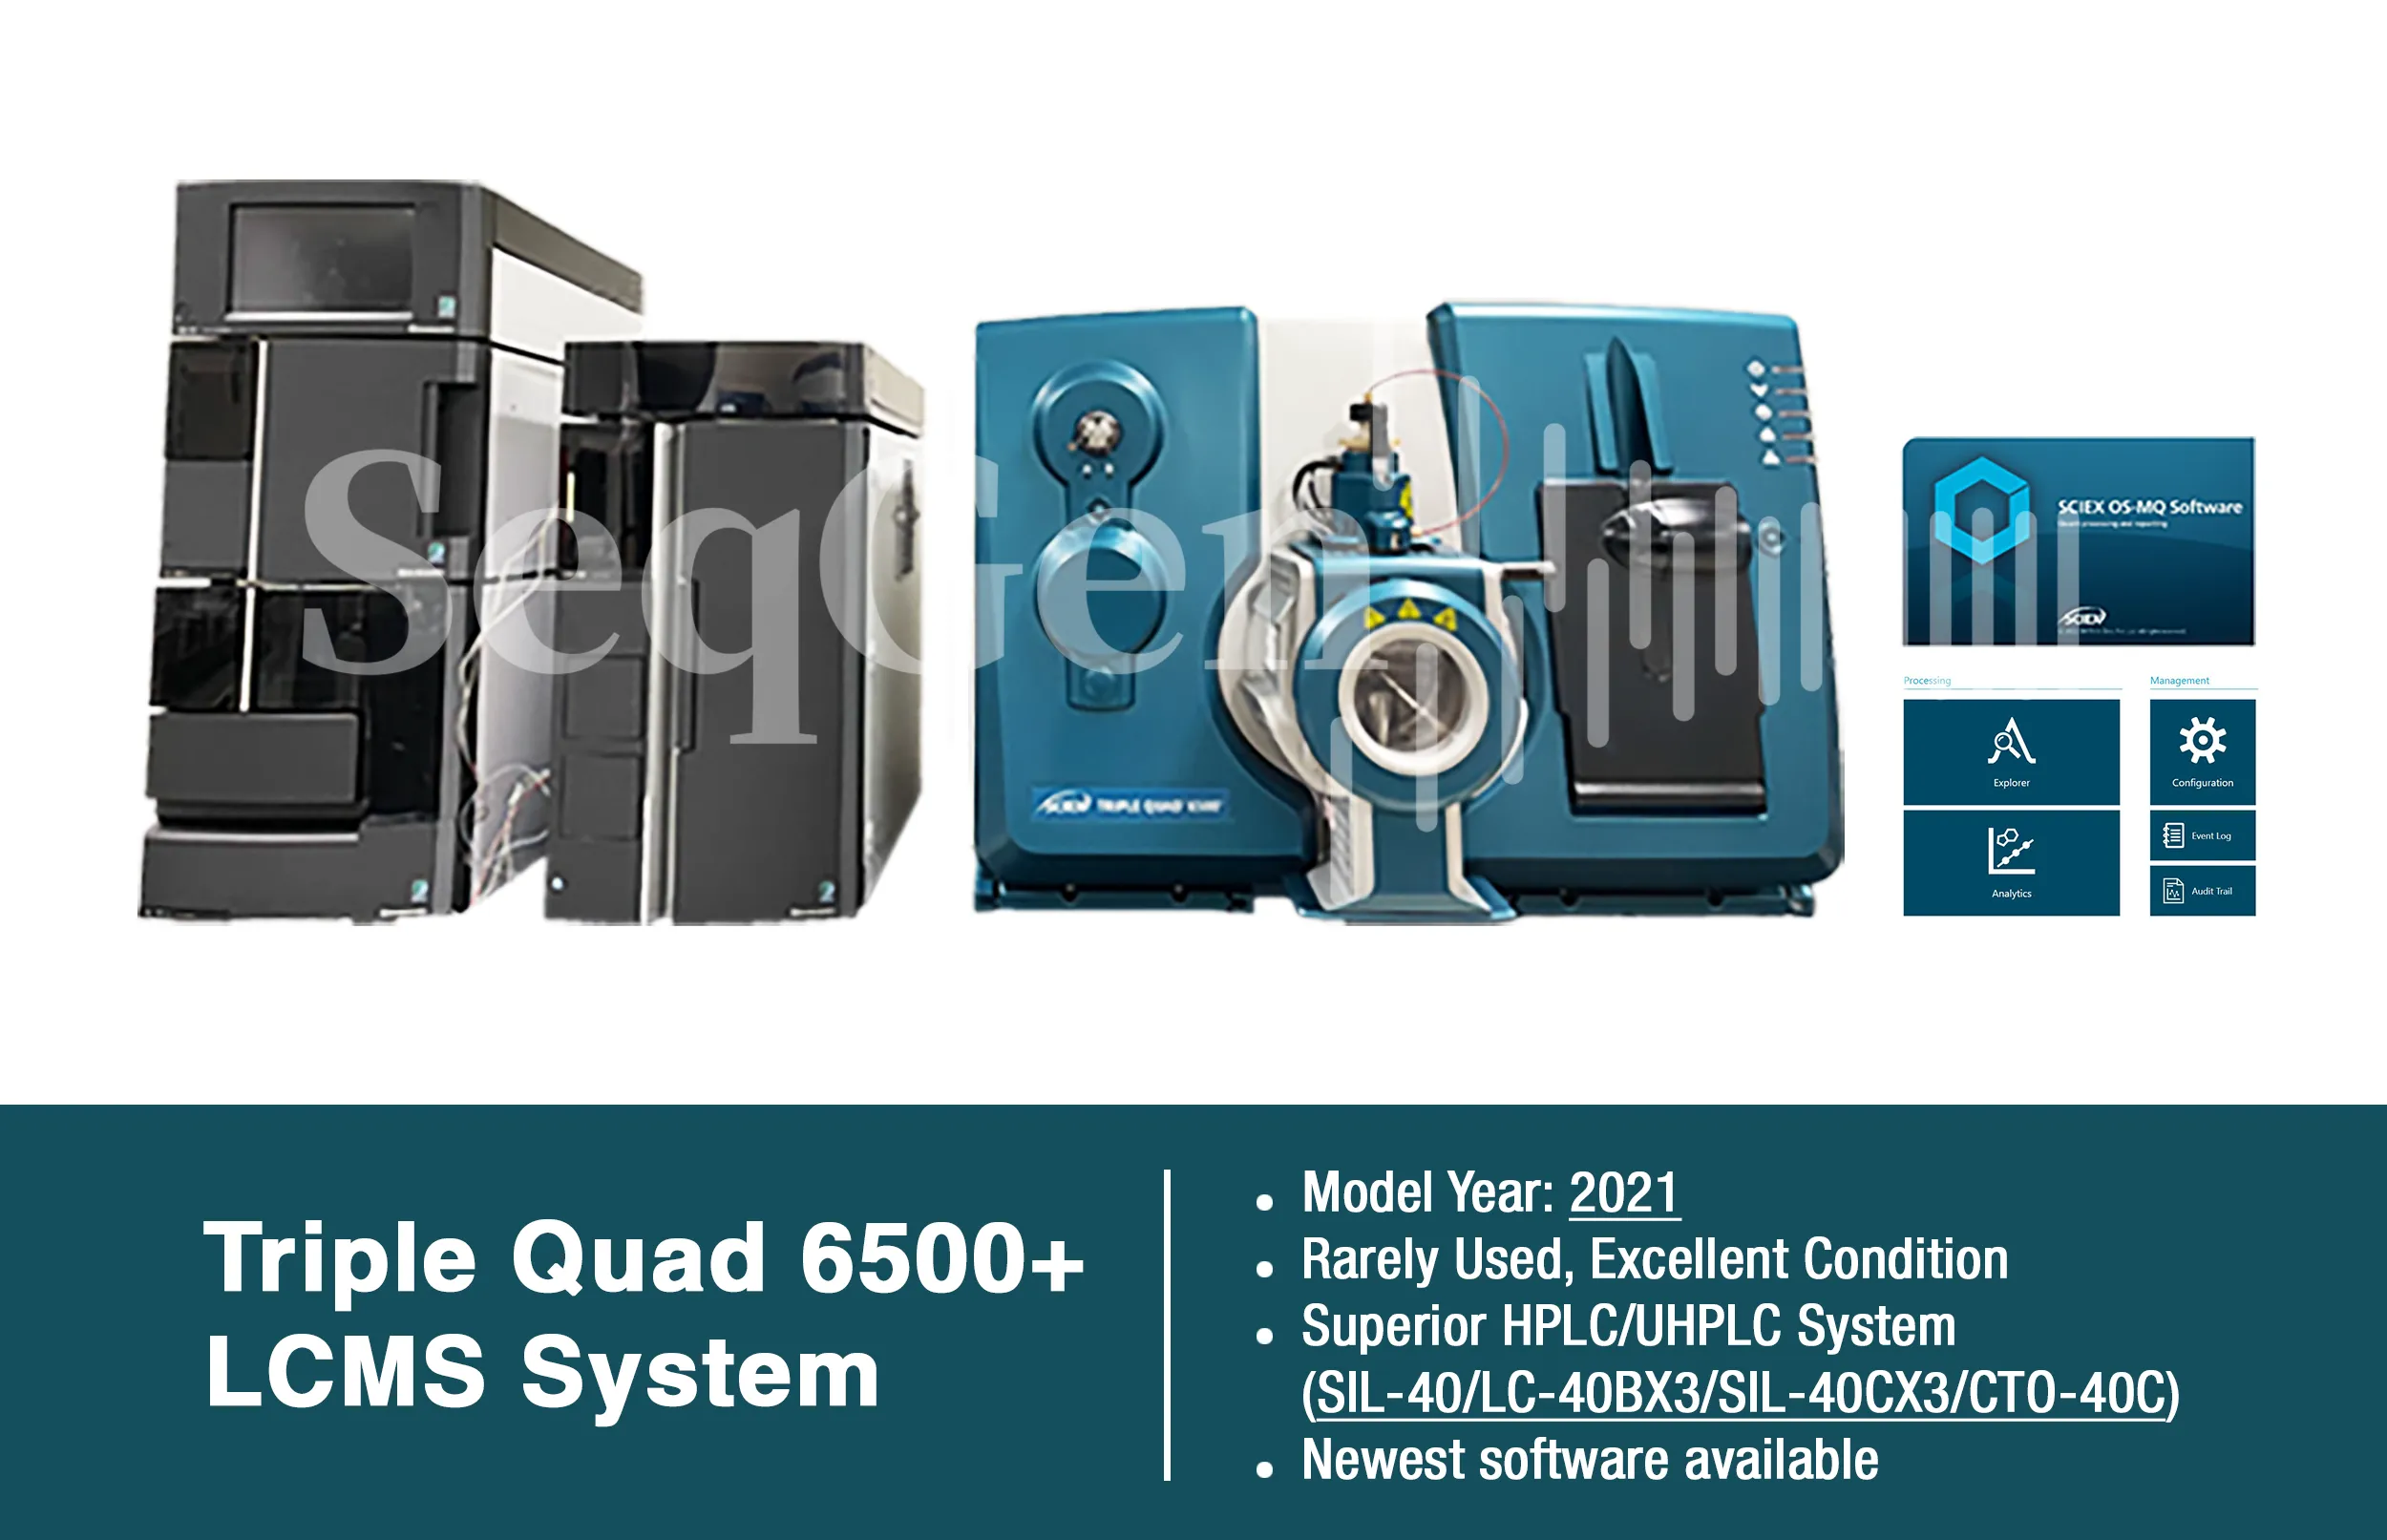 SCIEX Triple Quad 6500+ Series LC/MS